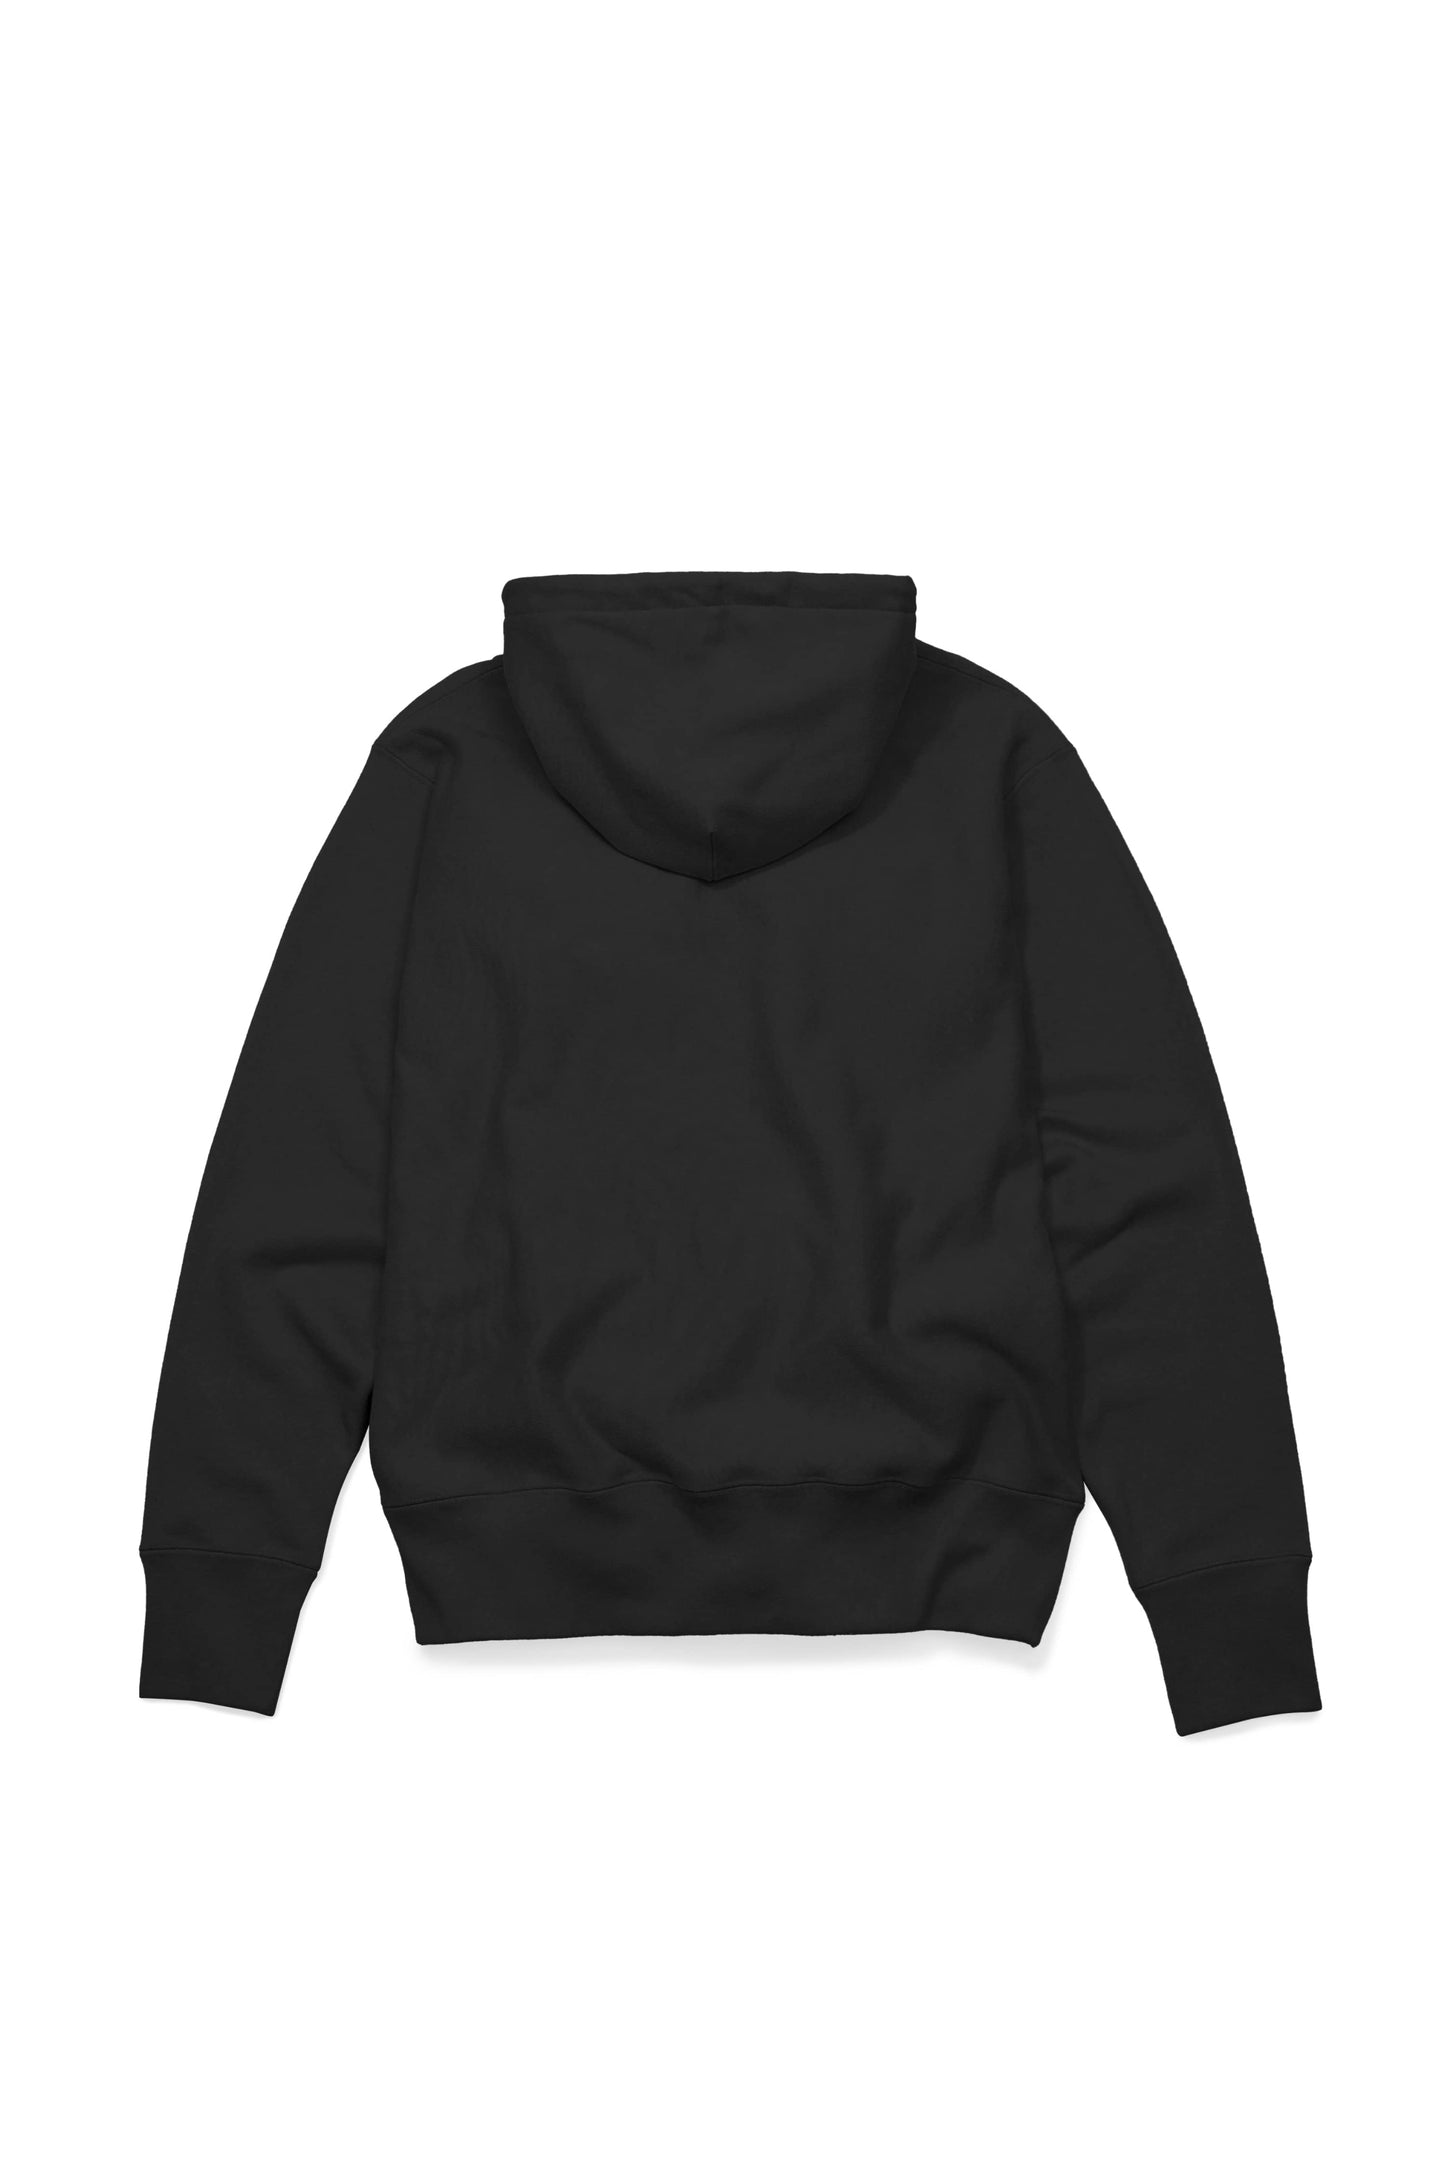 Premium Pullover Hoodie - Black